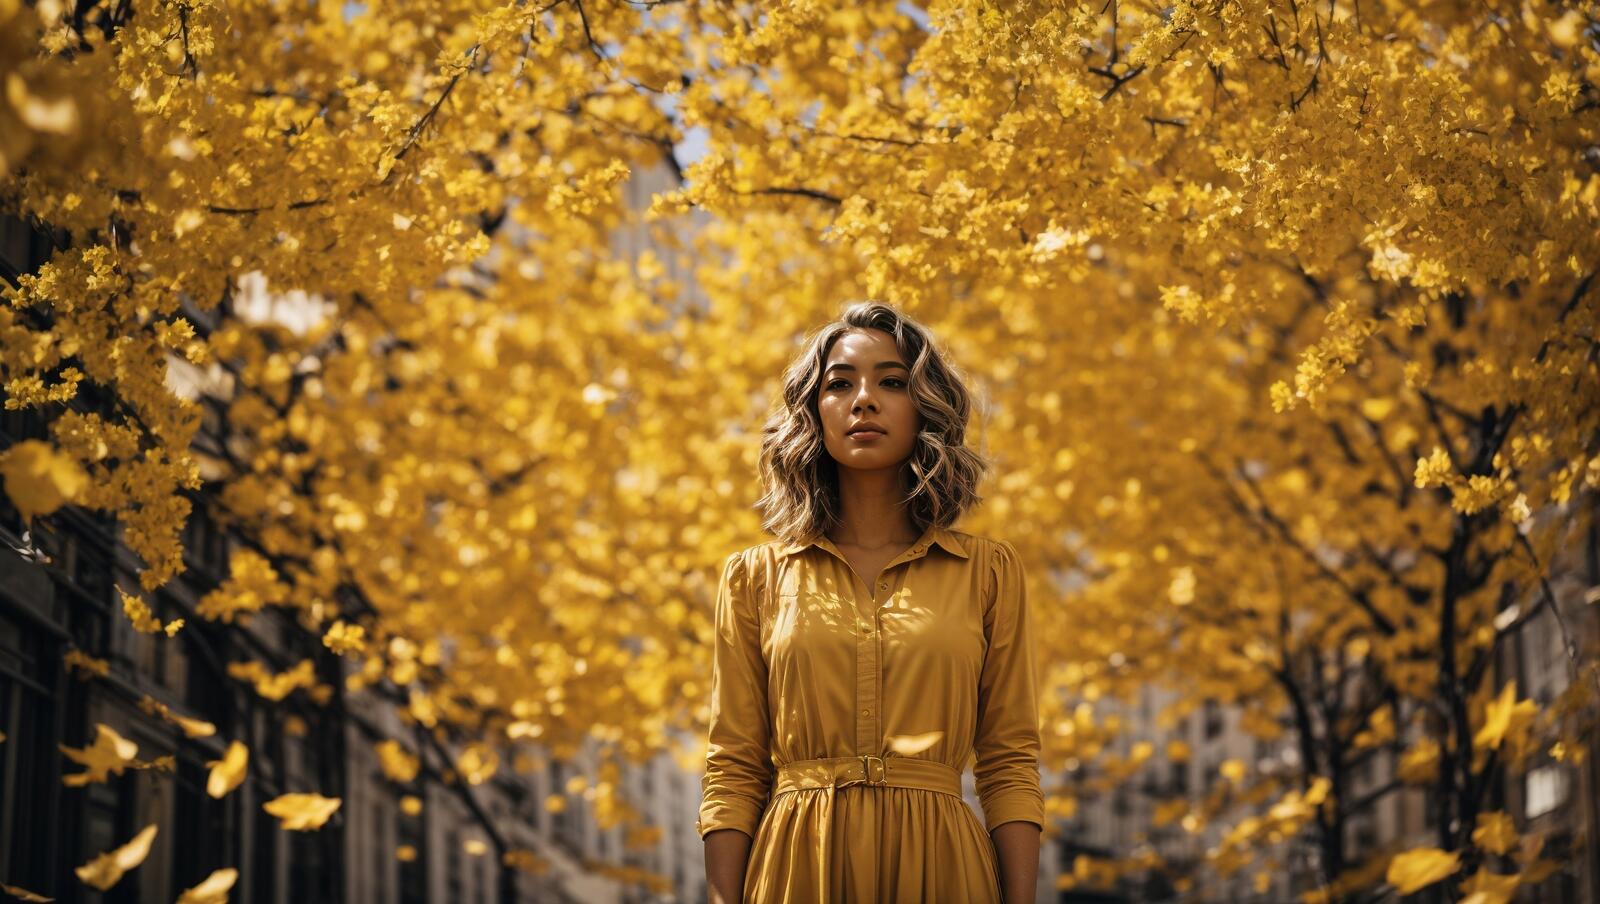 Бесплатное фото Девочка в желтом платье стоит под деревом, усыпанным желтыми листьями.